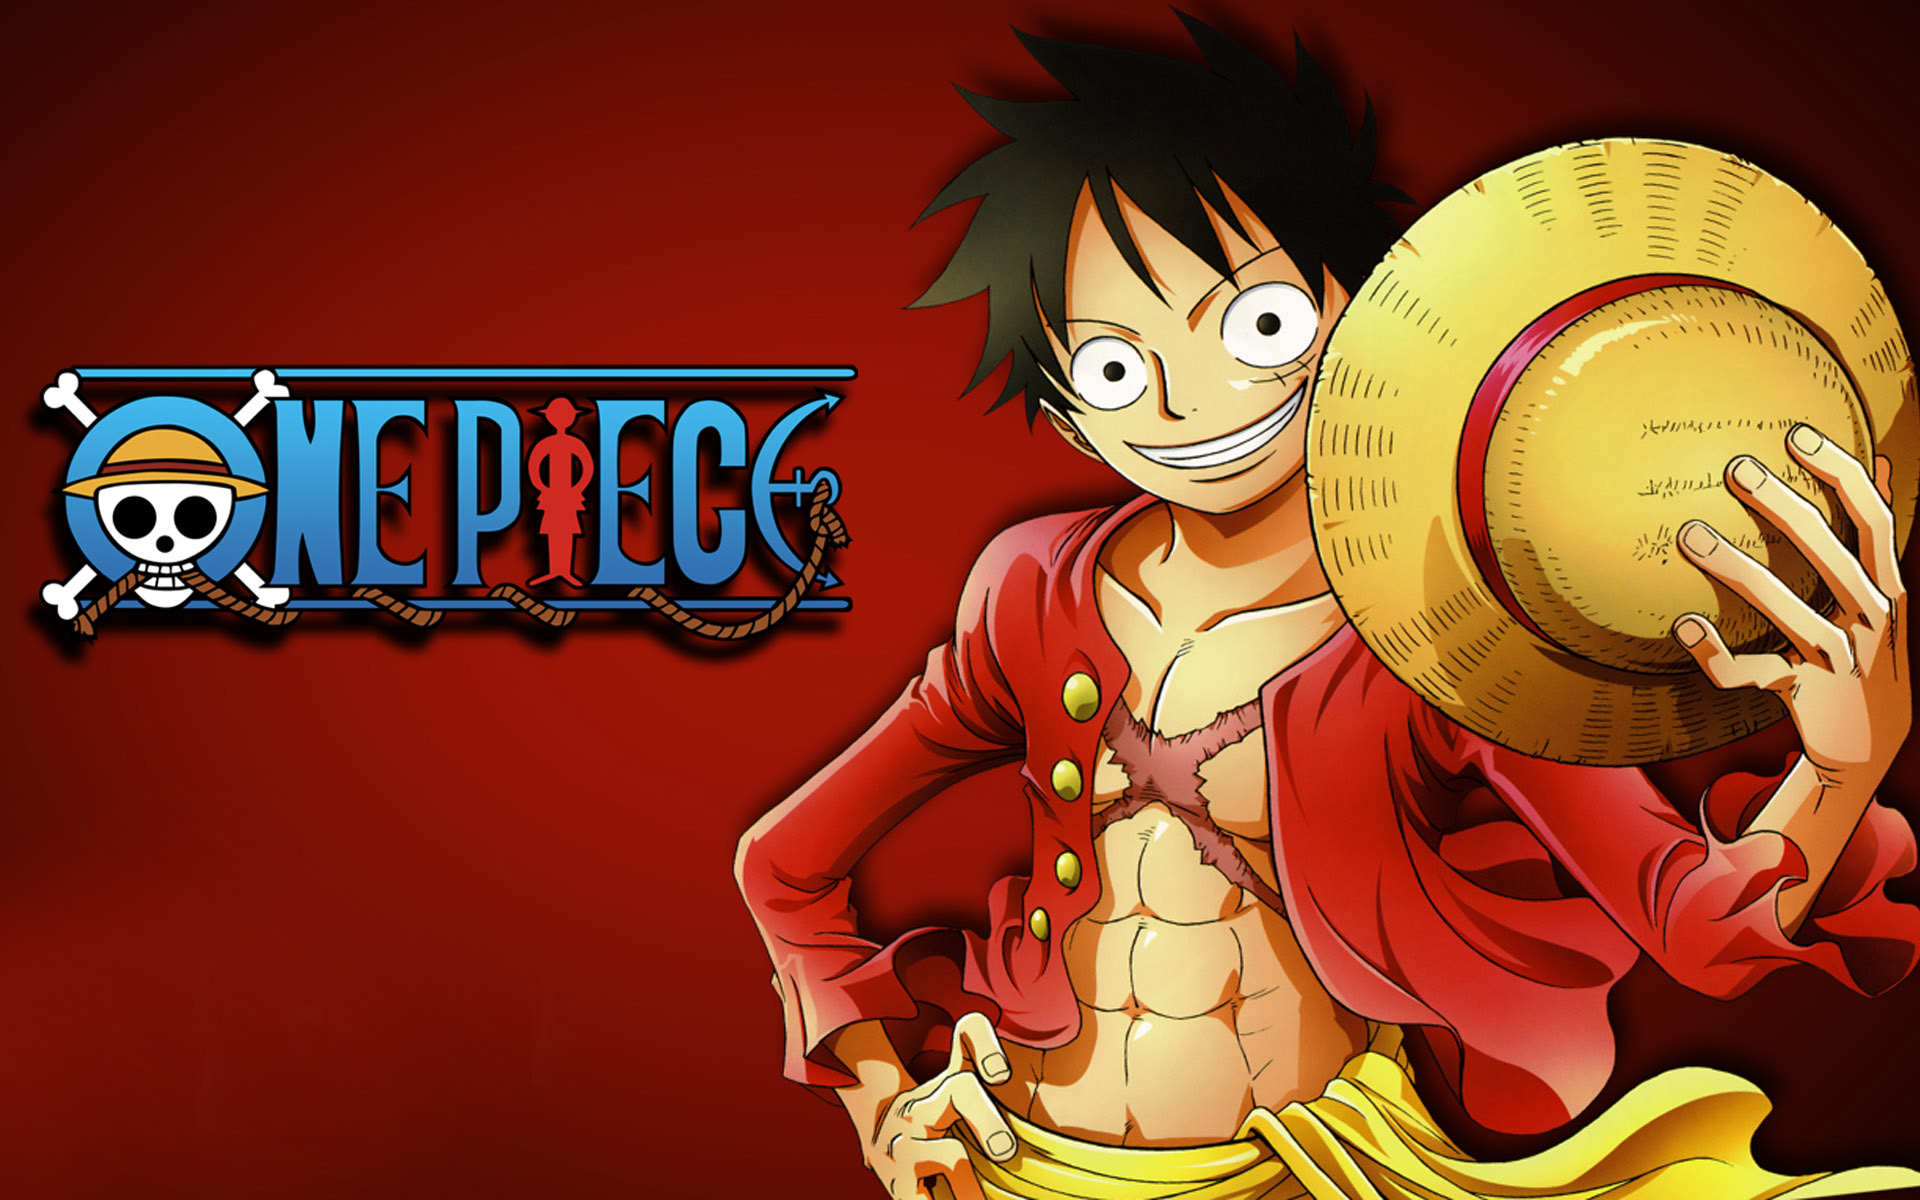 Roger, Oden, Luffy, One Piece là những nhân vật hấp dẫn trong bộ truyện tranh One Piece. Hãy cùng khám phá hành trình của các nhân vật này thông qua các hình ảnh đáng yêu và sống động.